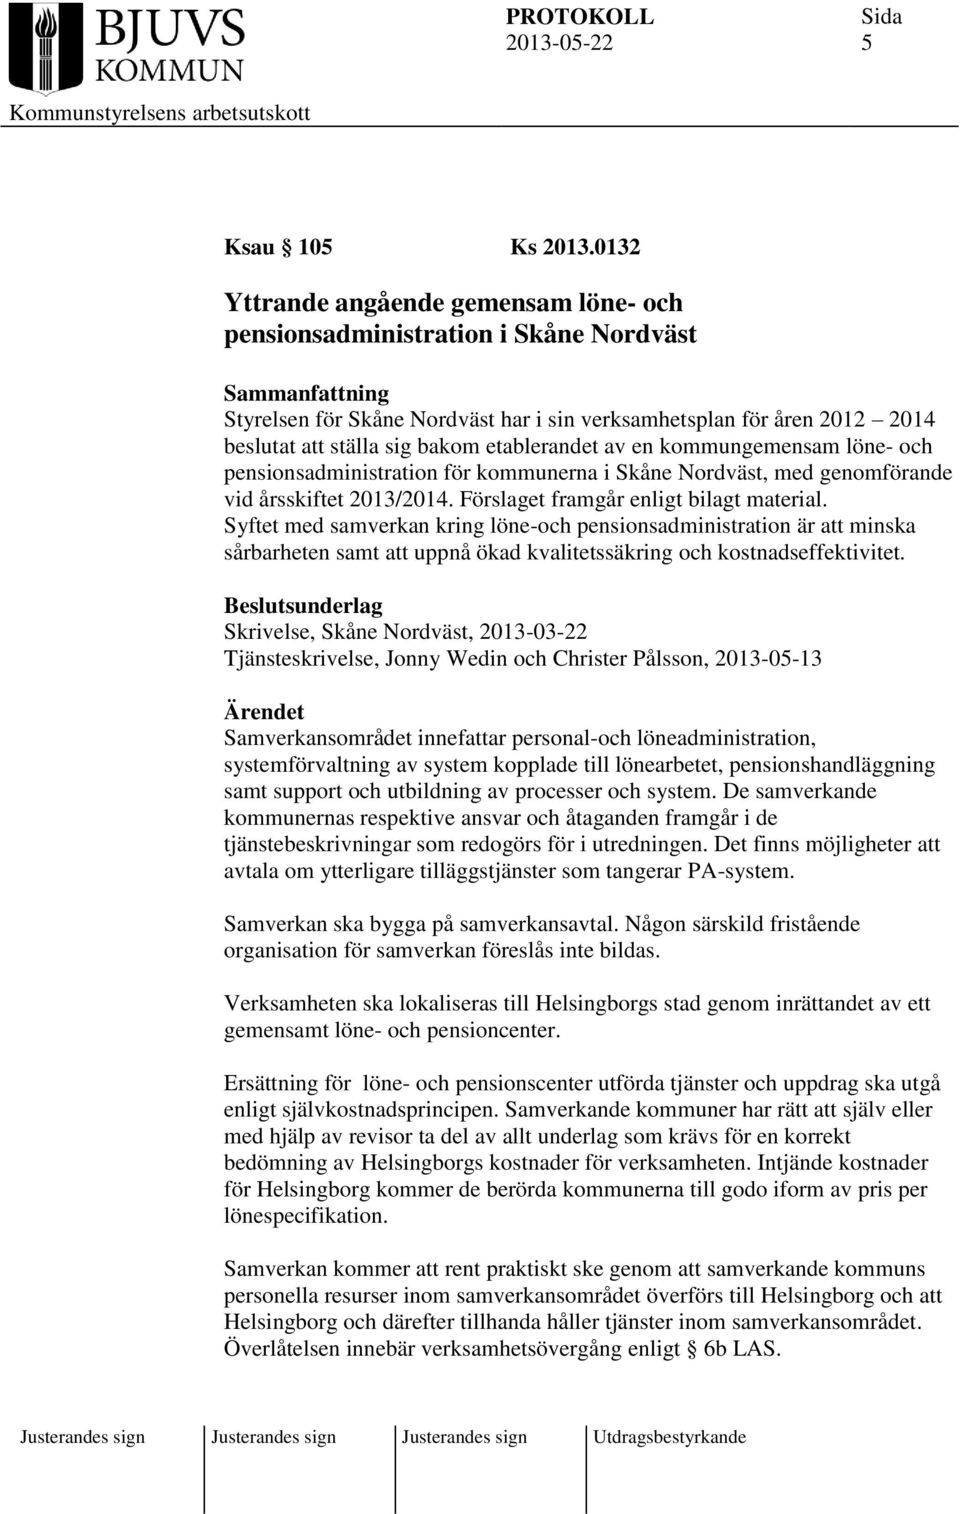 av en kommungemensam löne- och pensionsadministration för kommunerna i Skåne Nordväst, med genomförande vid årsskiftet 2013/2014. Förslaget framgår enligt bilagt material.